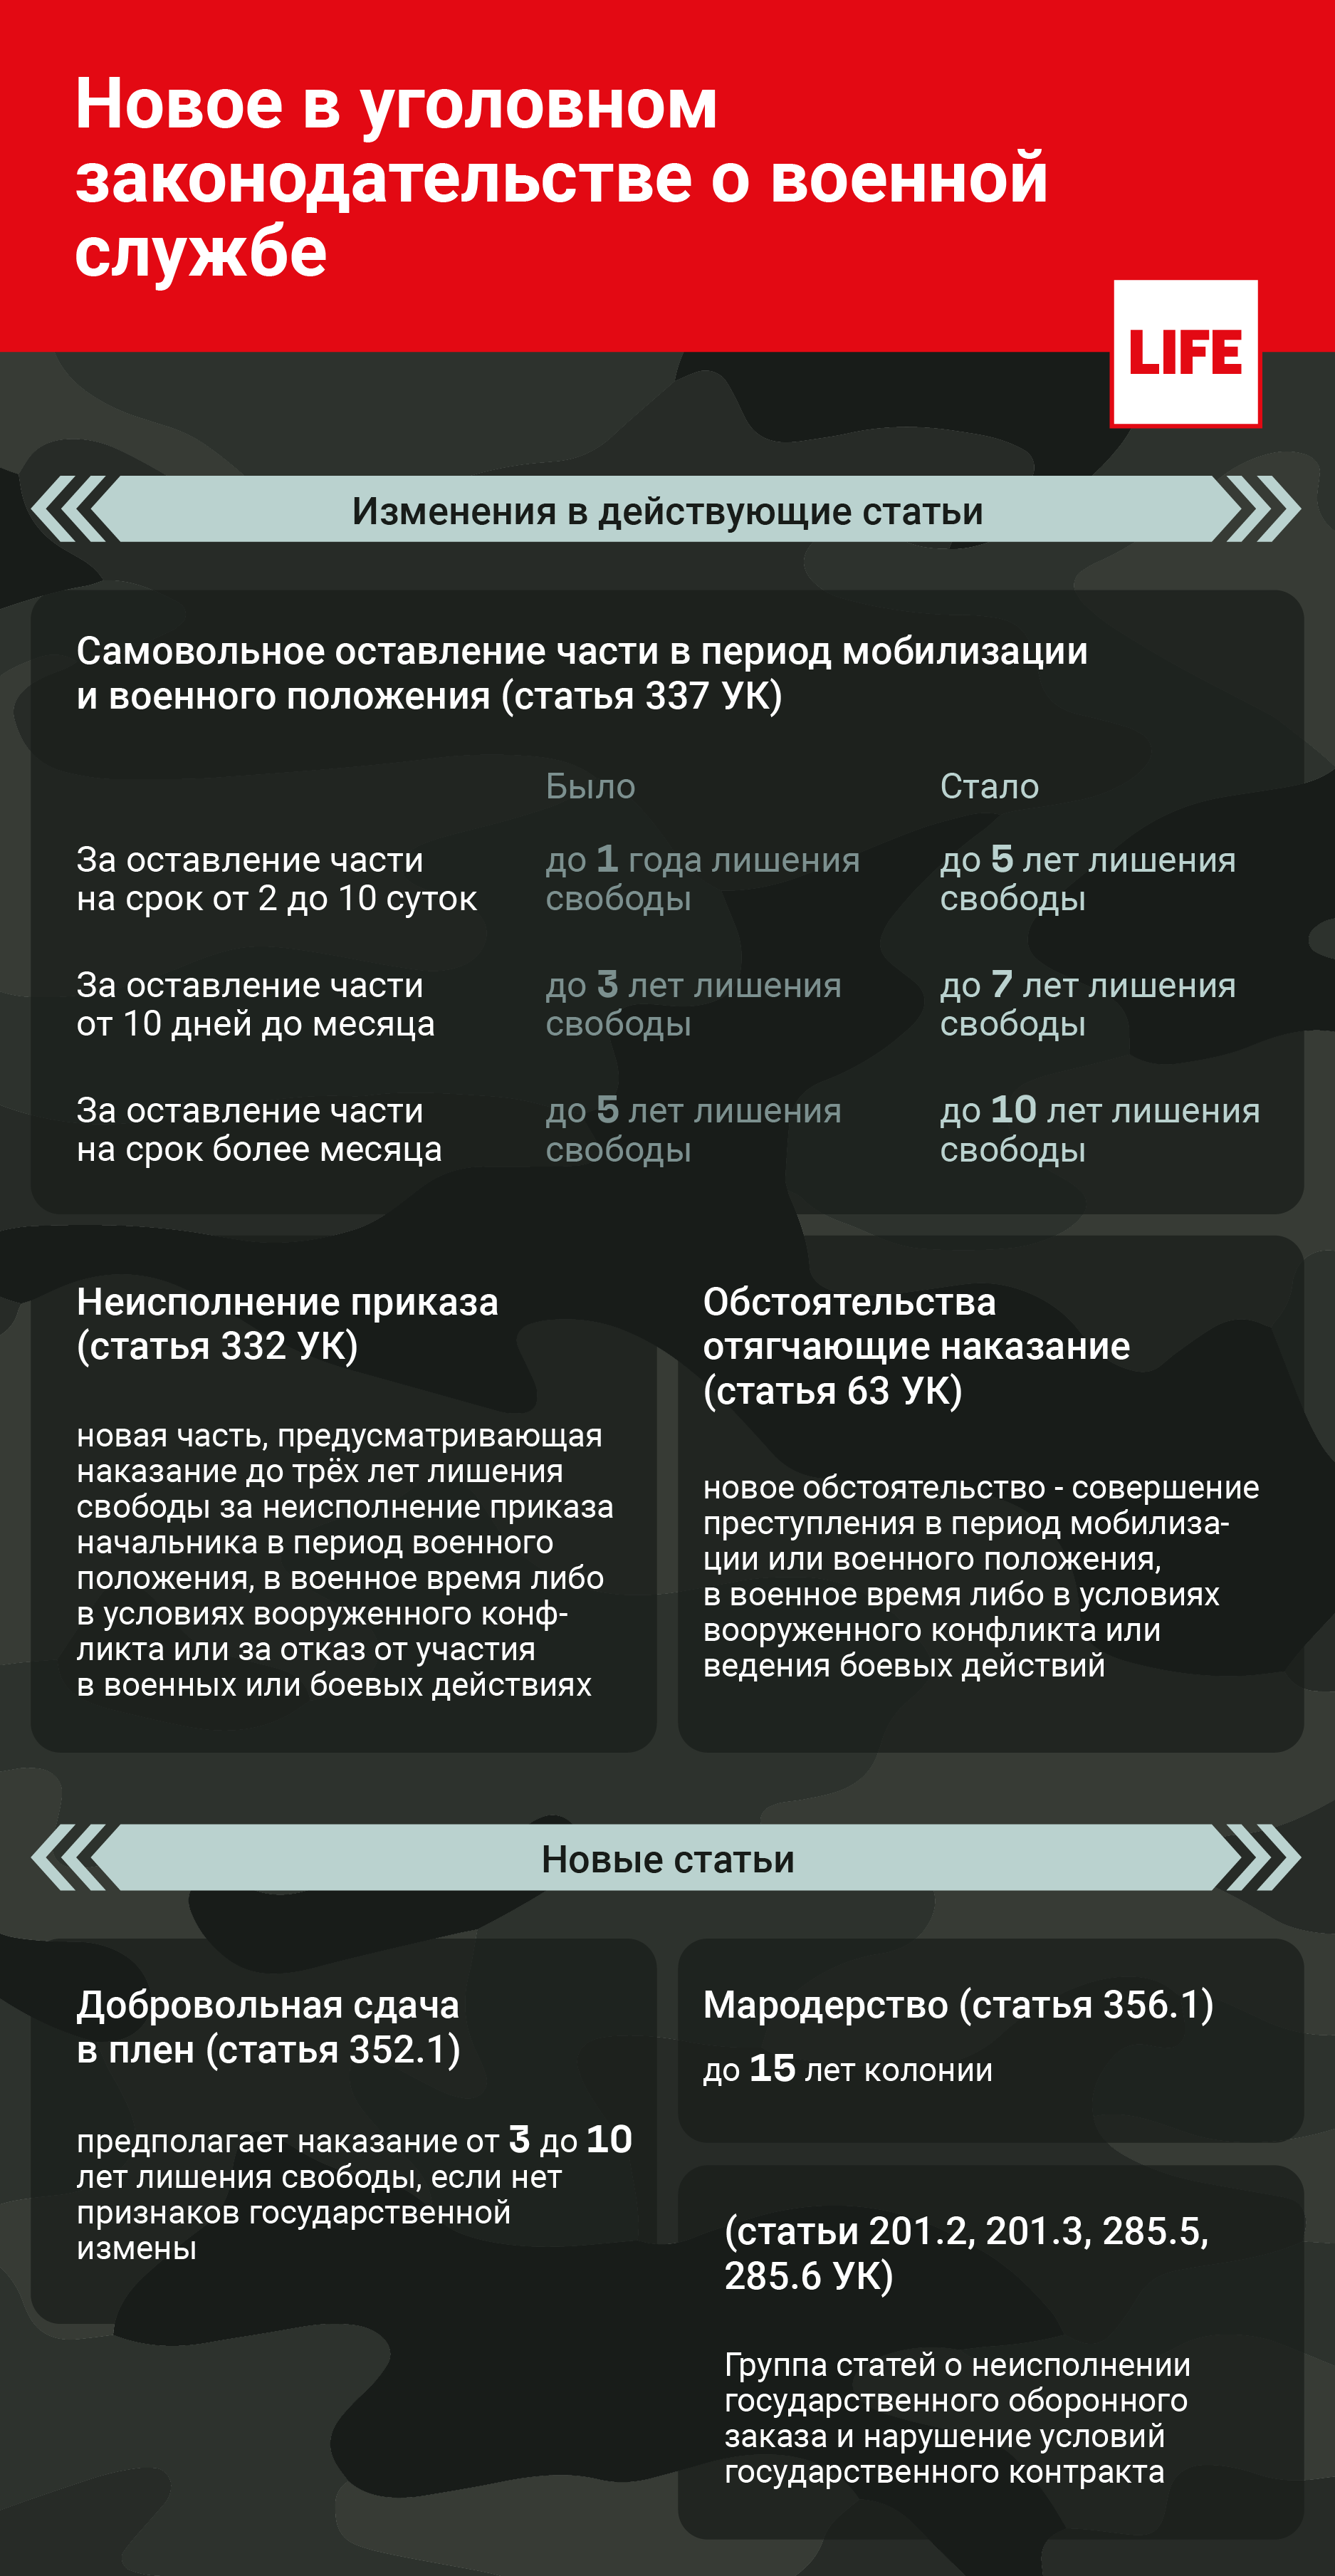 Новое в уголовном законодательстве о военной службе. Инфографика © LIFE